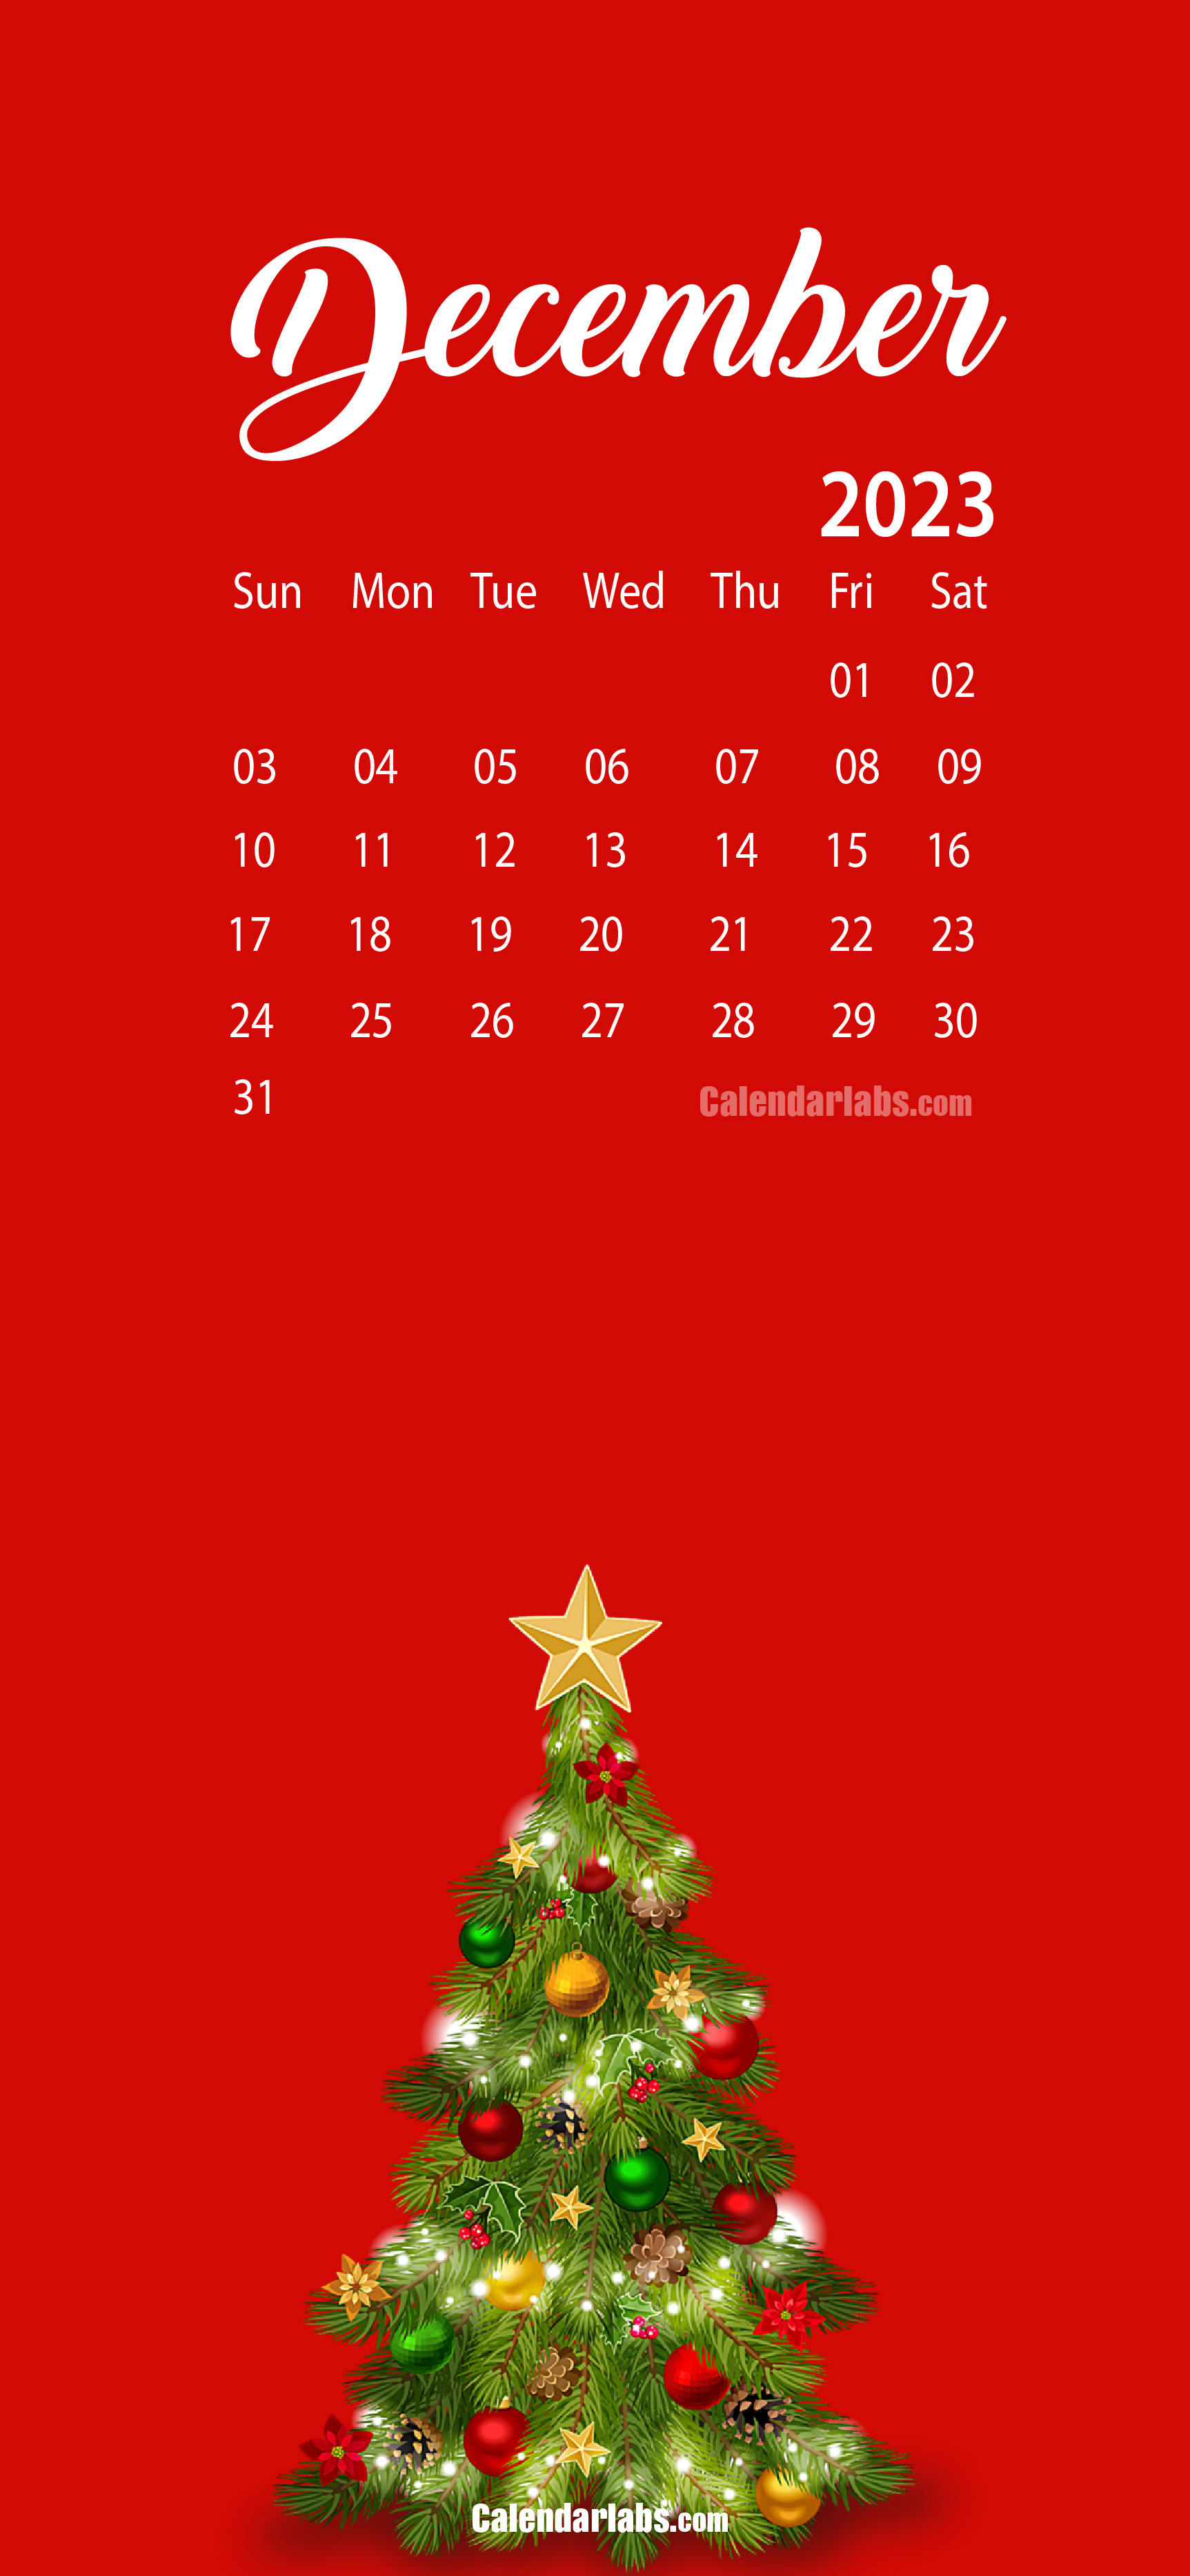 December 2023 Desktop Wallpaper Calendar Calendarlabs